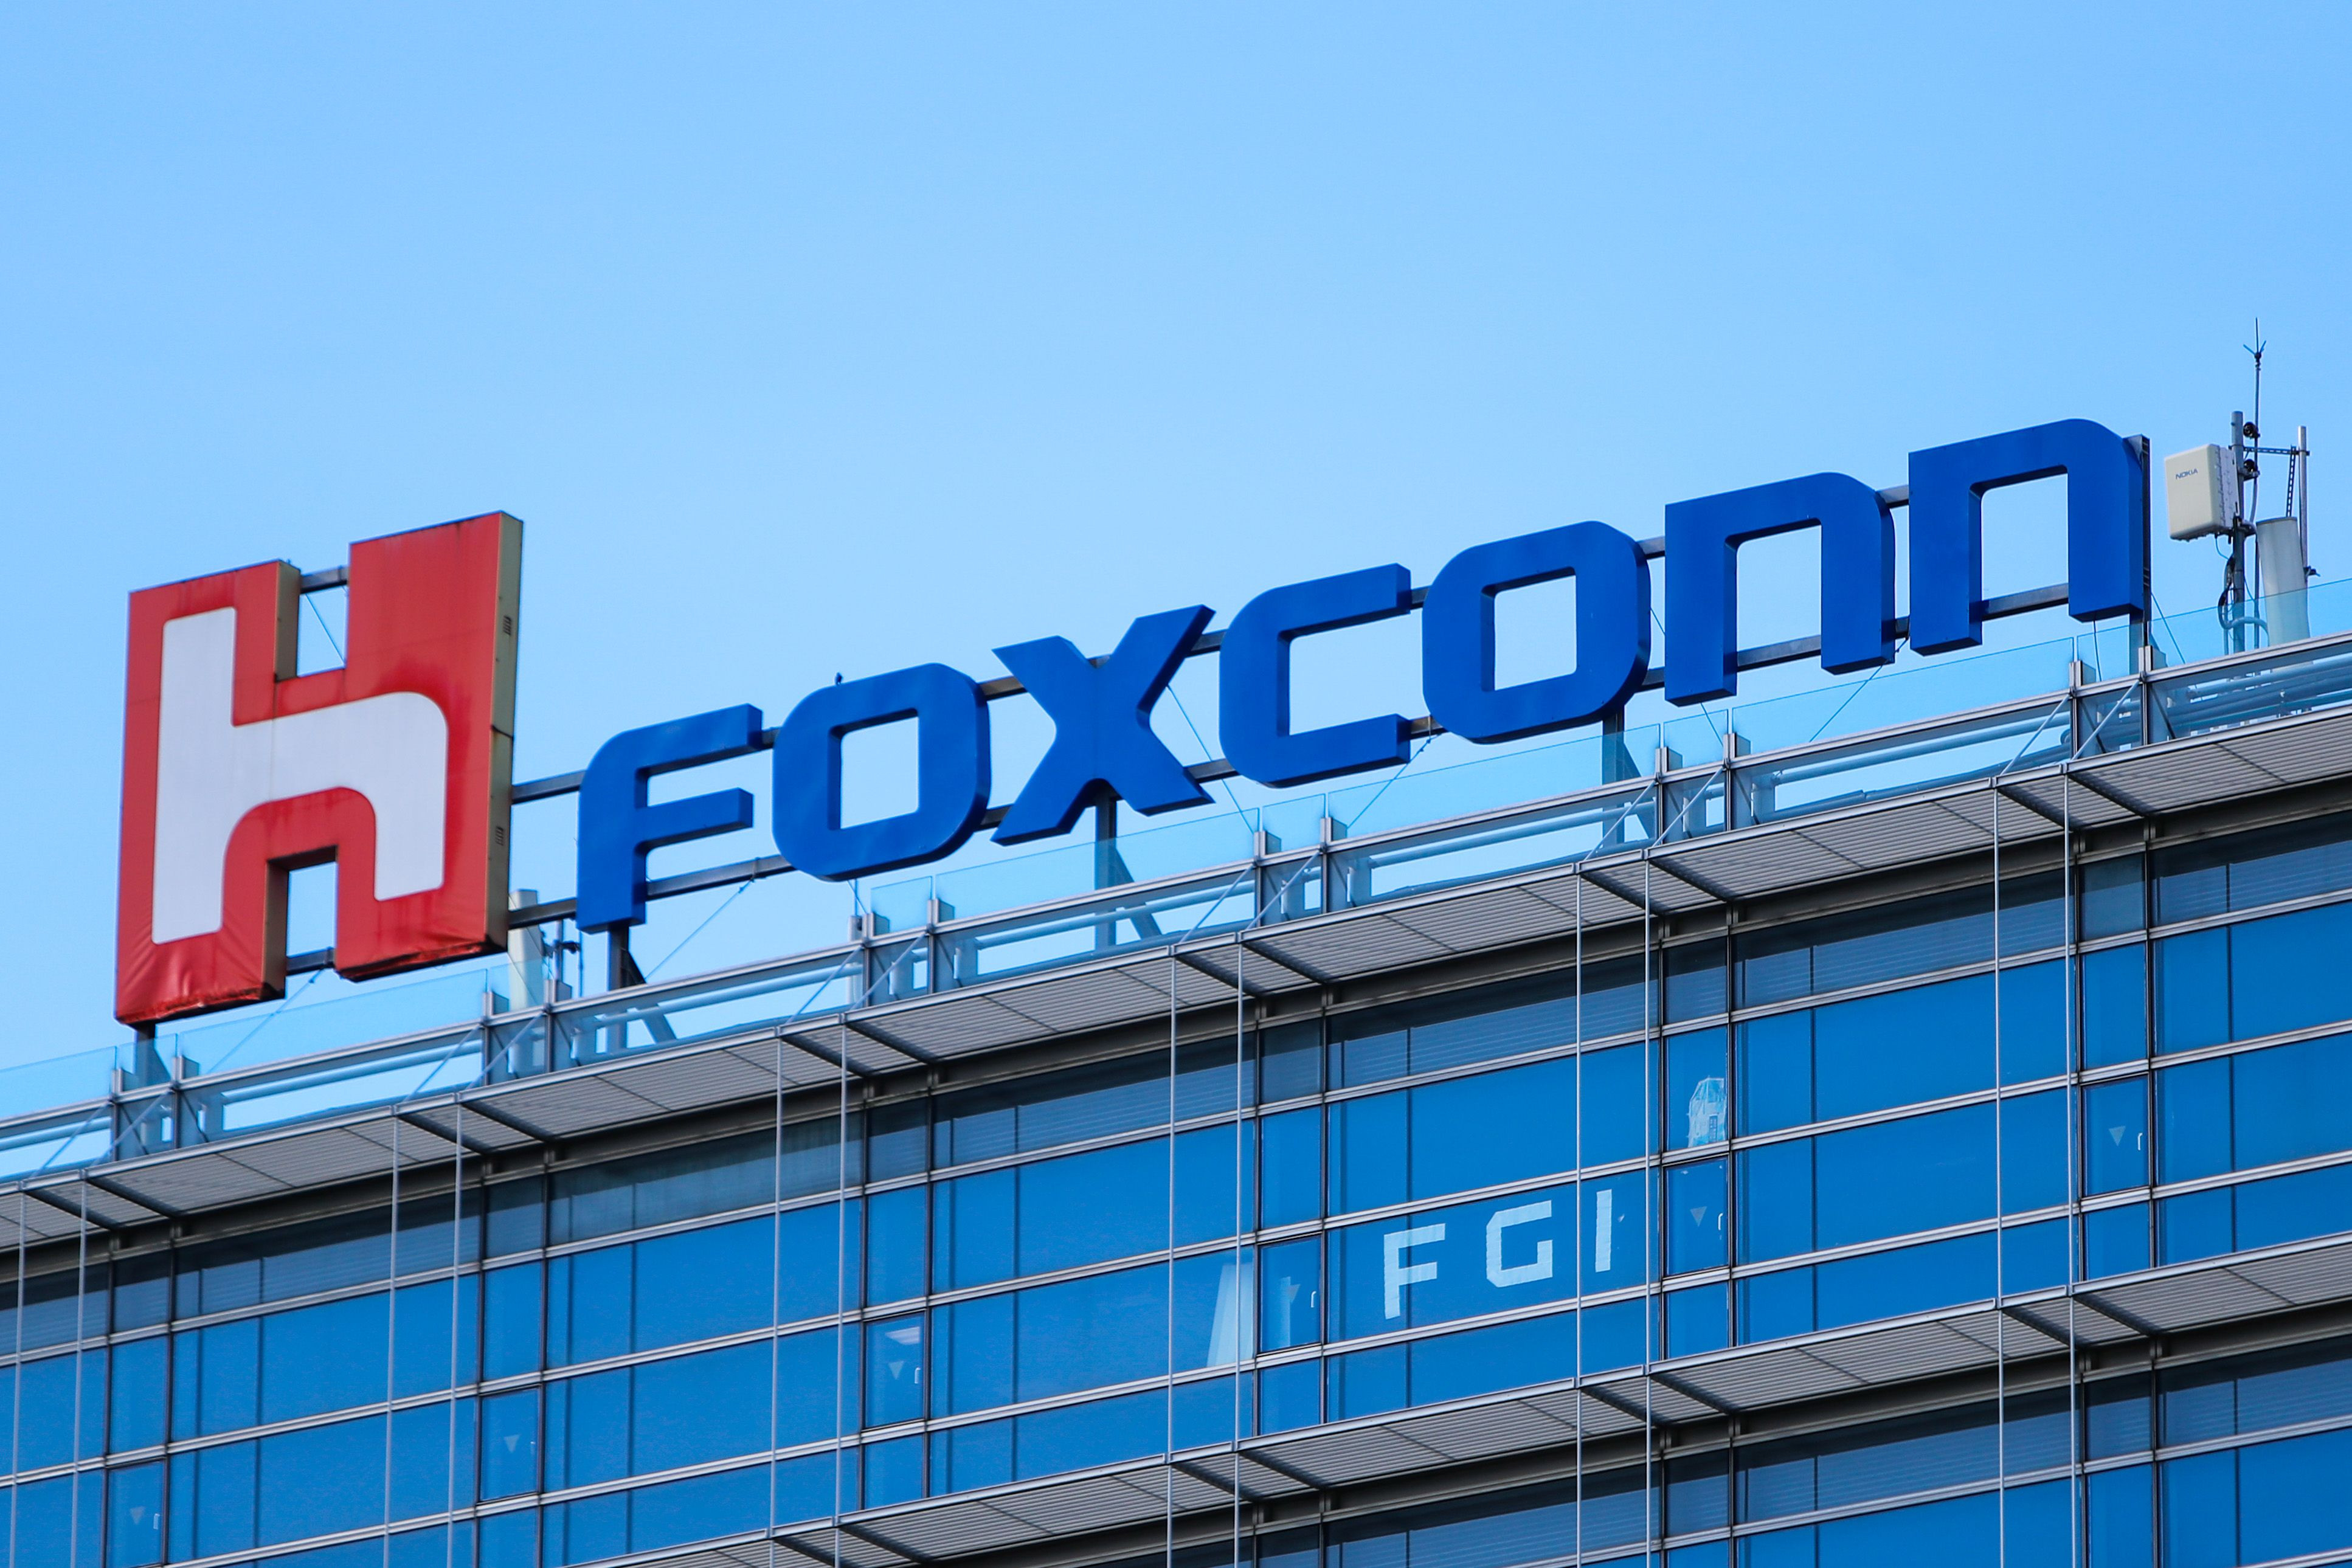 Foxconn Trung Quốc giảm lương giữa làn sóng chuyển dịch sang Việt Nam, Ấn Độ